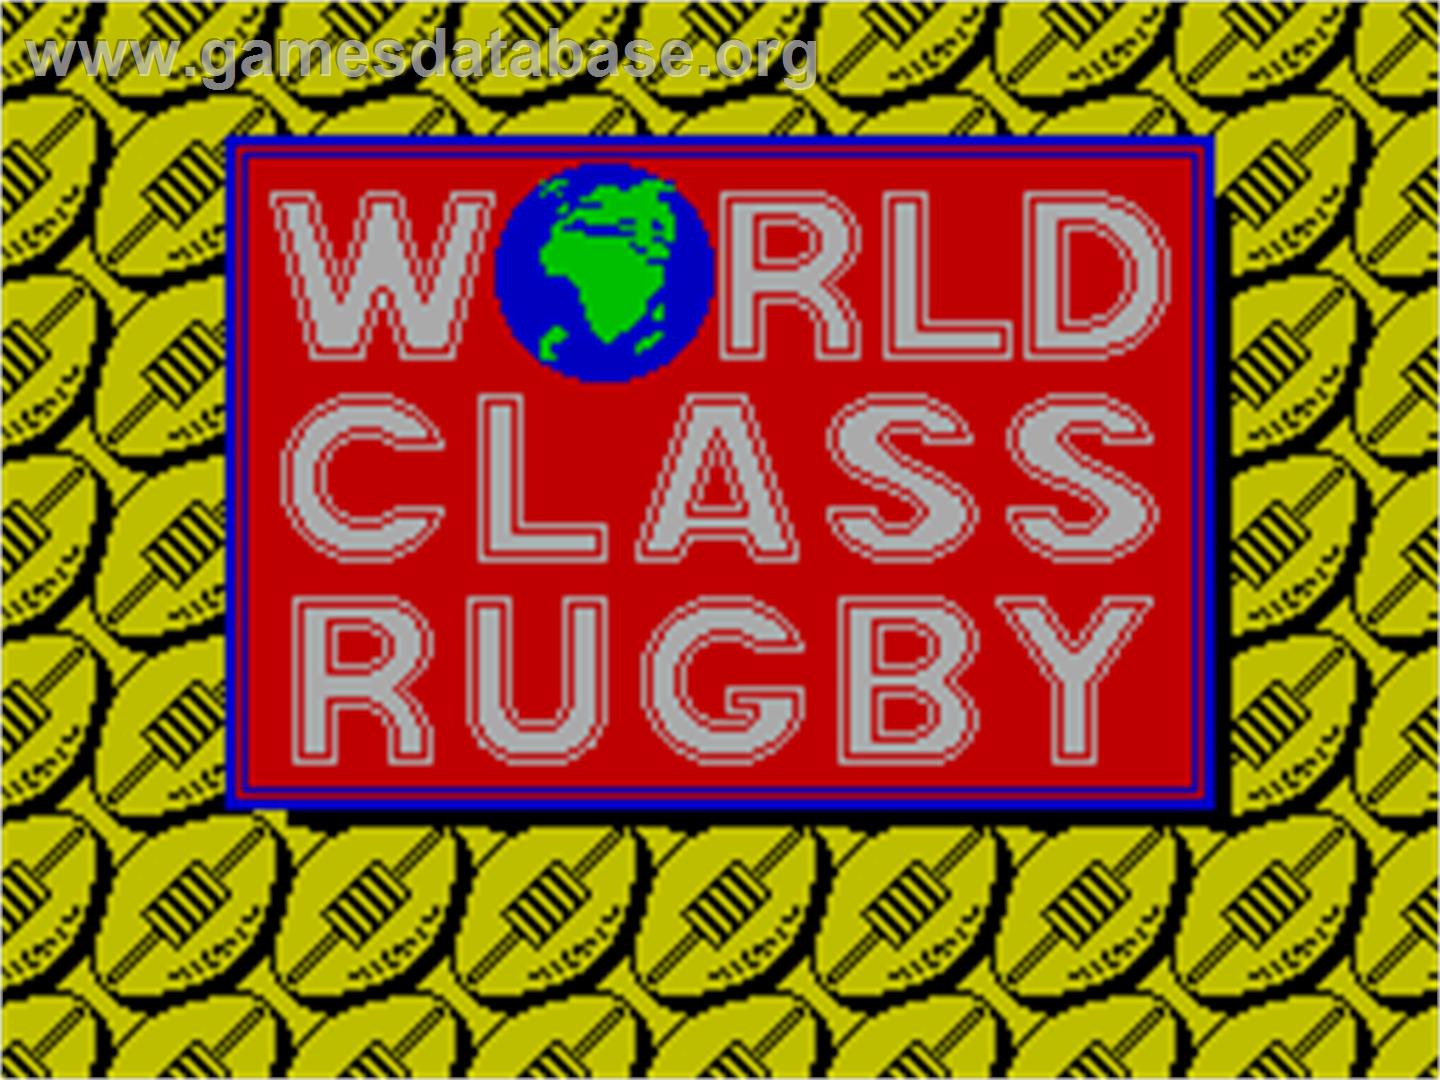 World Class Rugby - Sinclair ZX Spectrum - Artwork - Title Screen